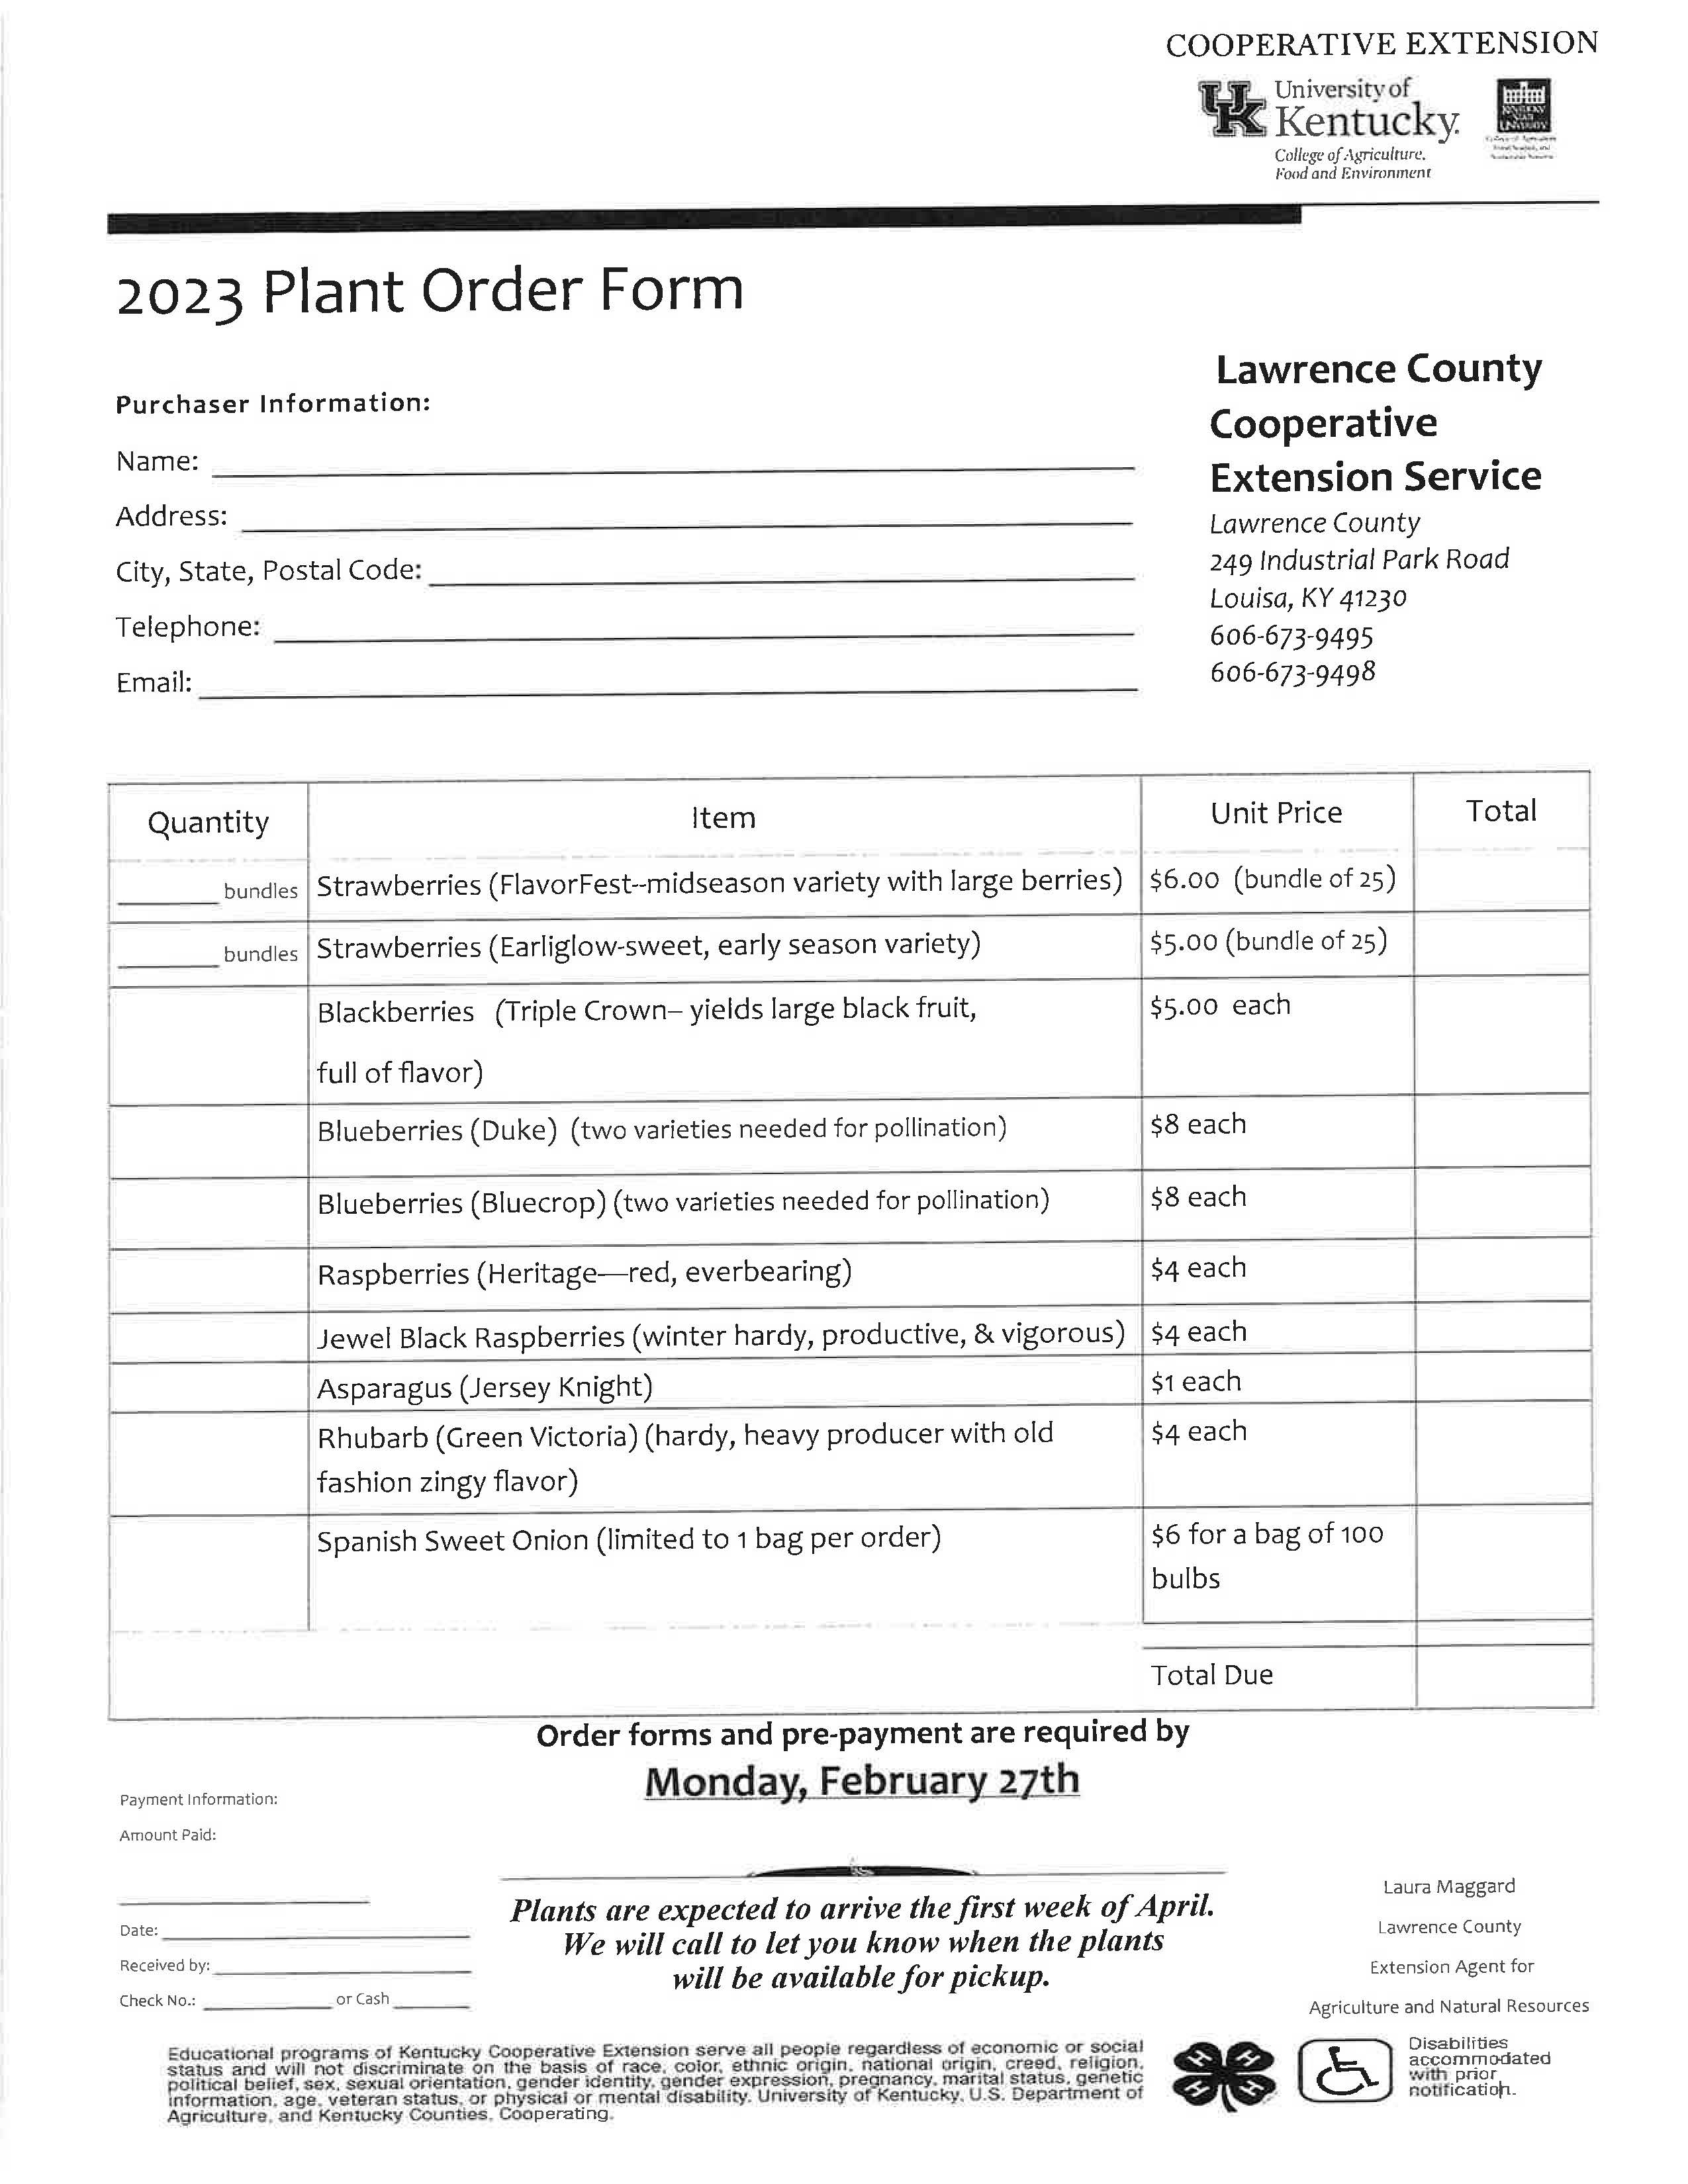 Plant Order Form